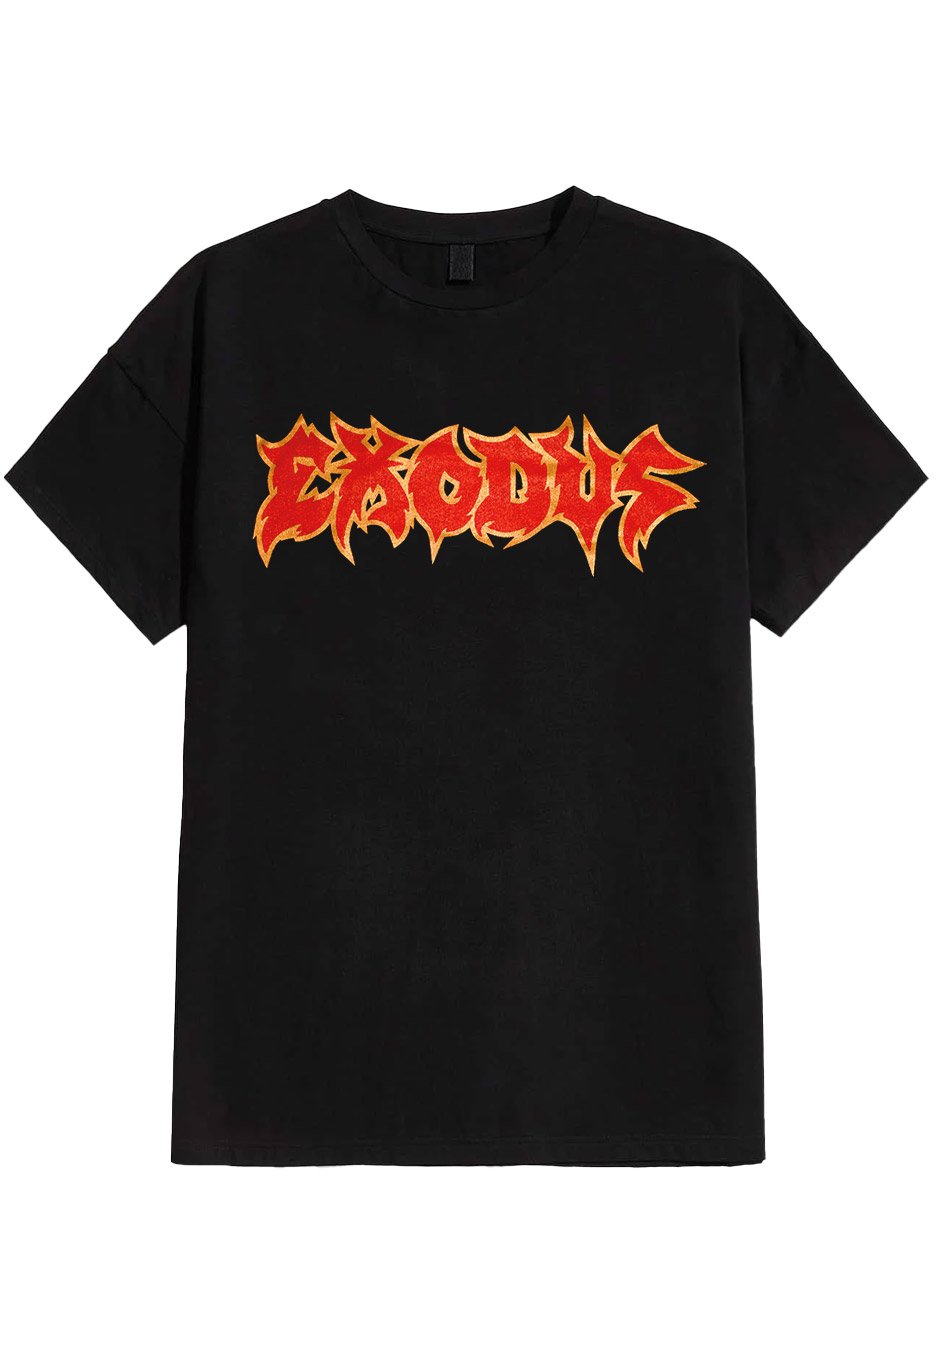 Exodus - Still No Ballad - T-Shirt